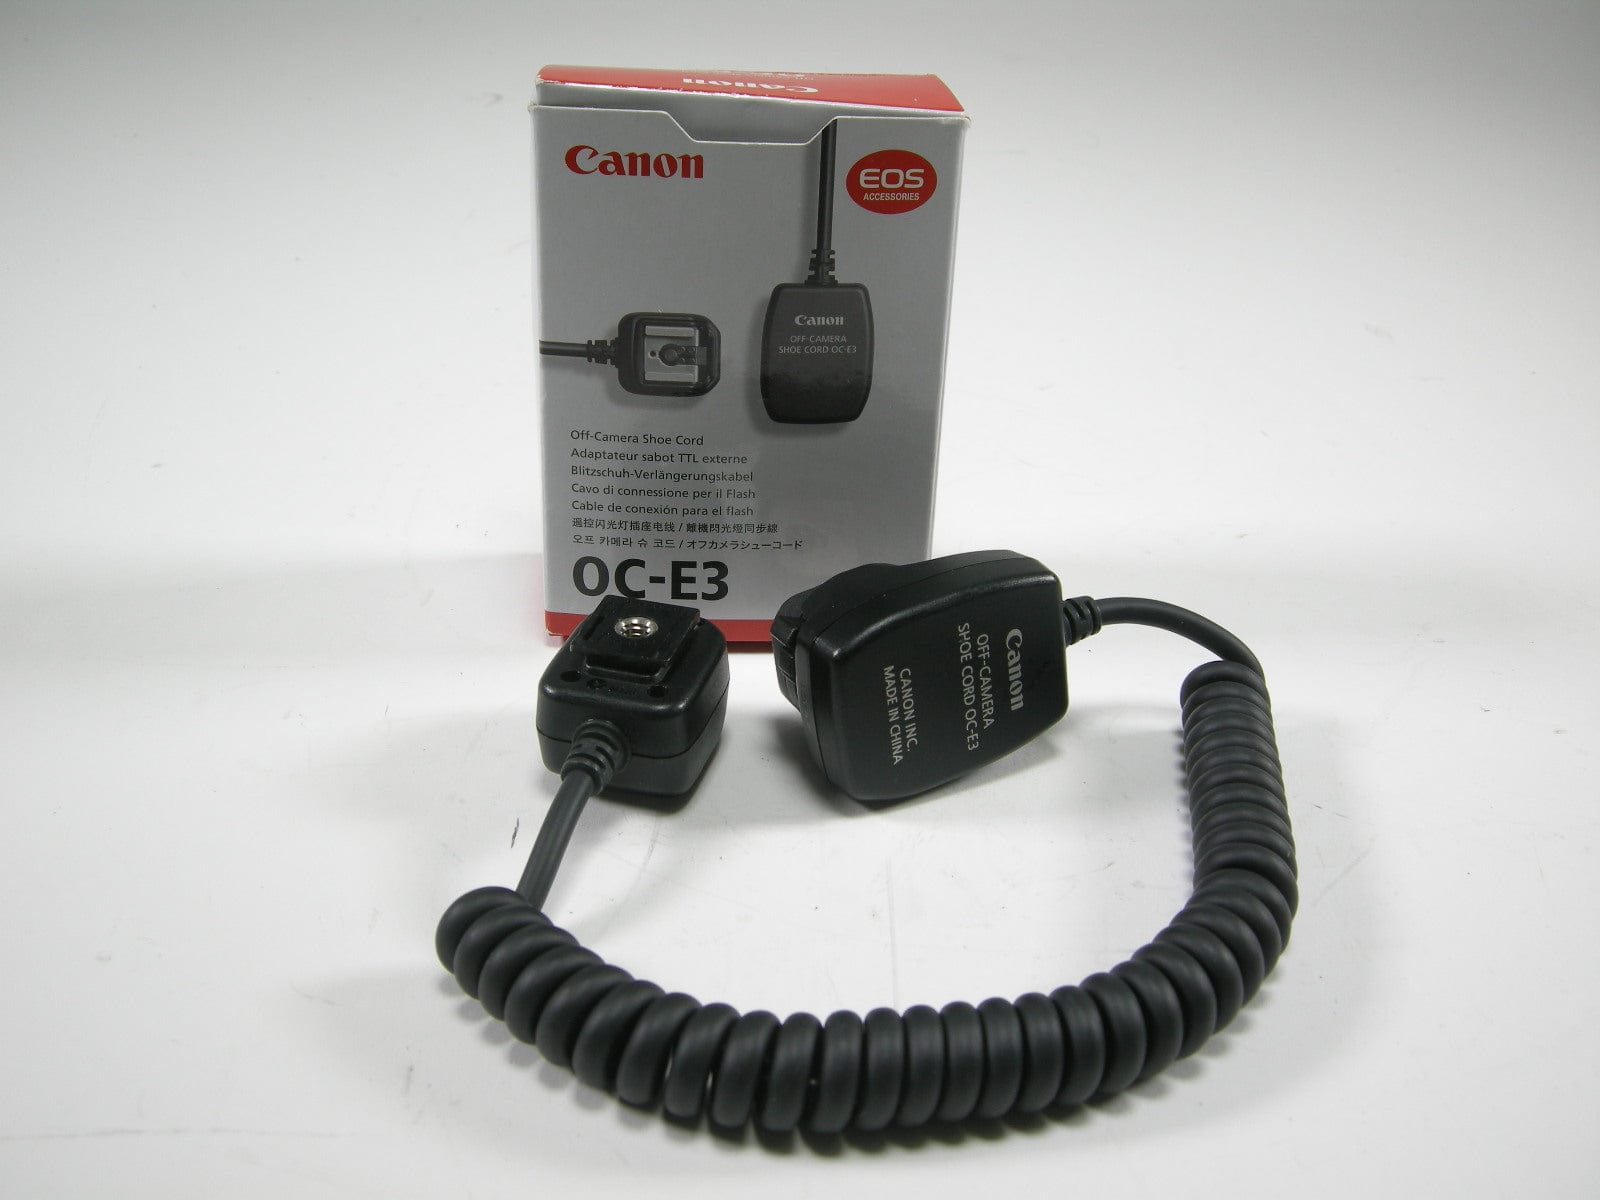 Canon OC-E3 Off Camera Shoe Cord